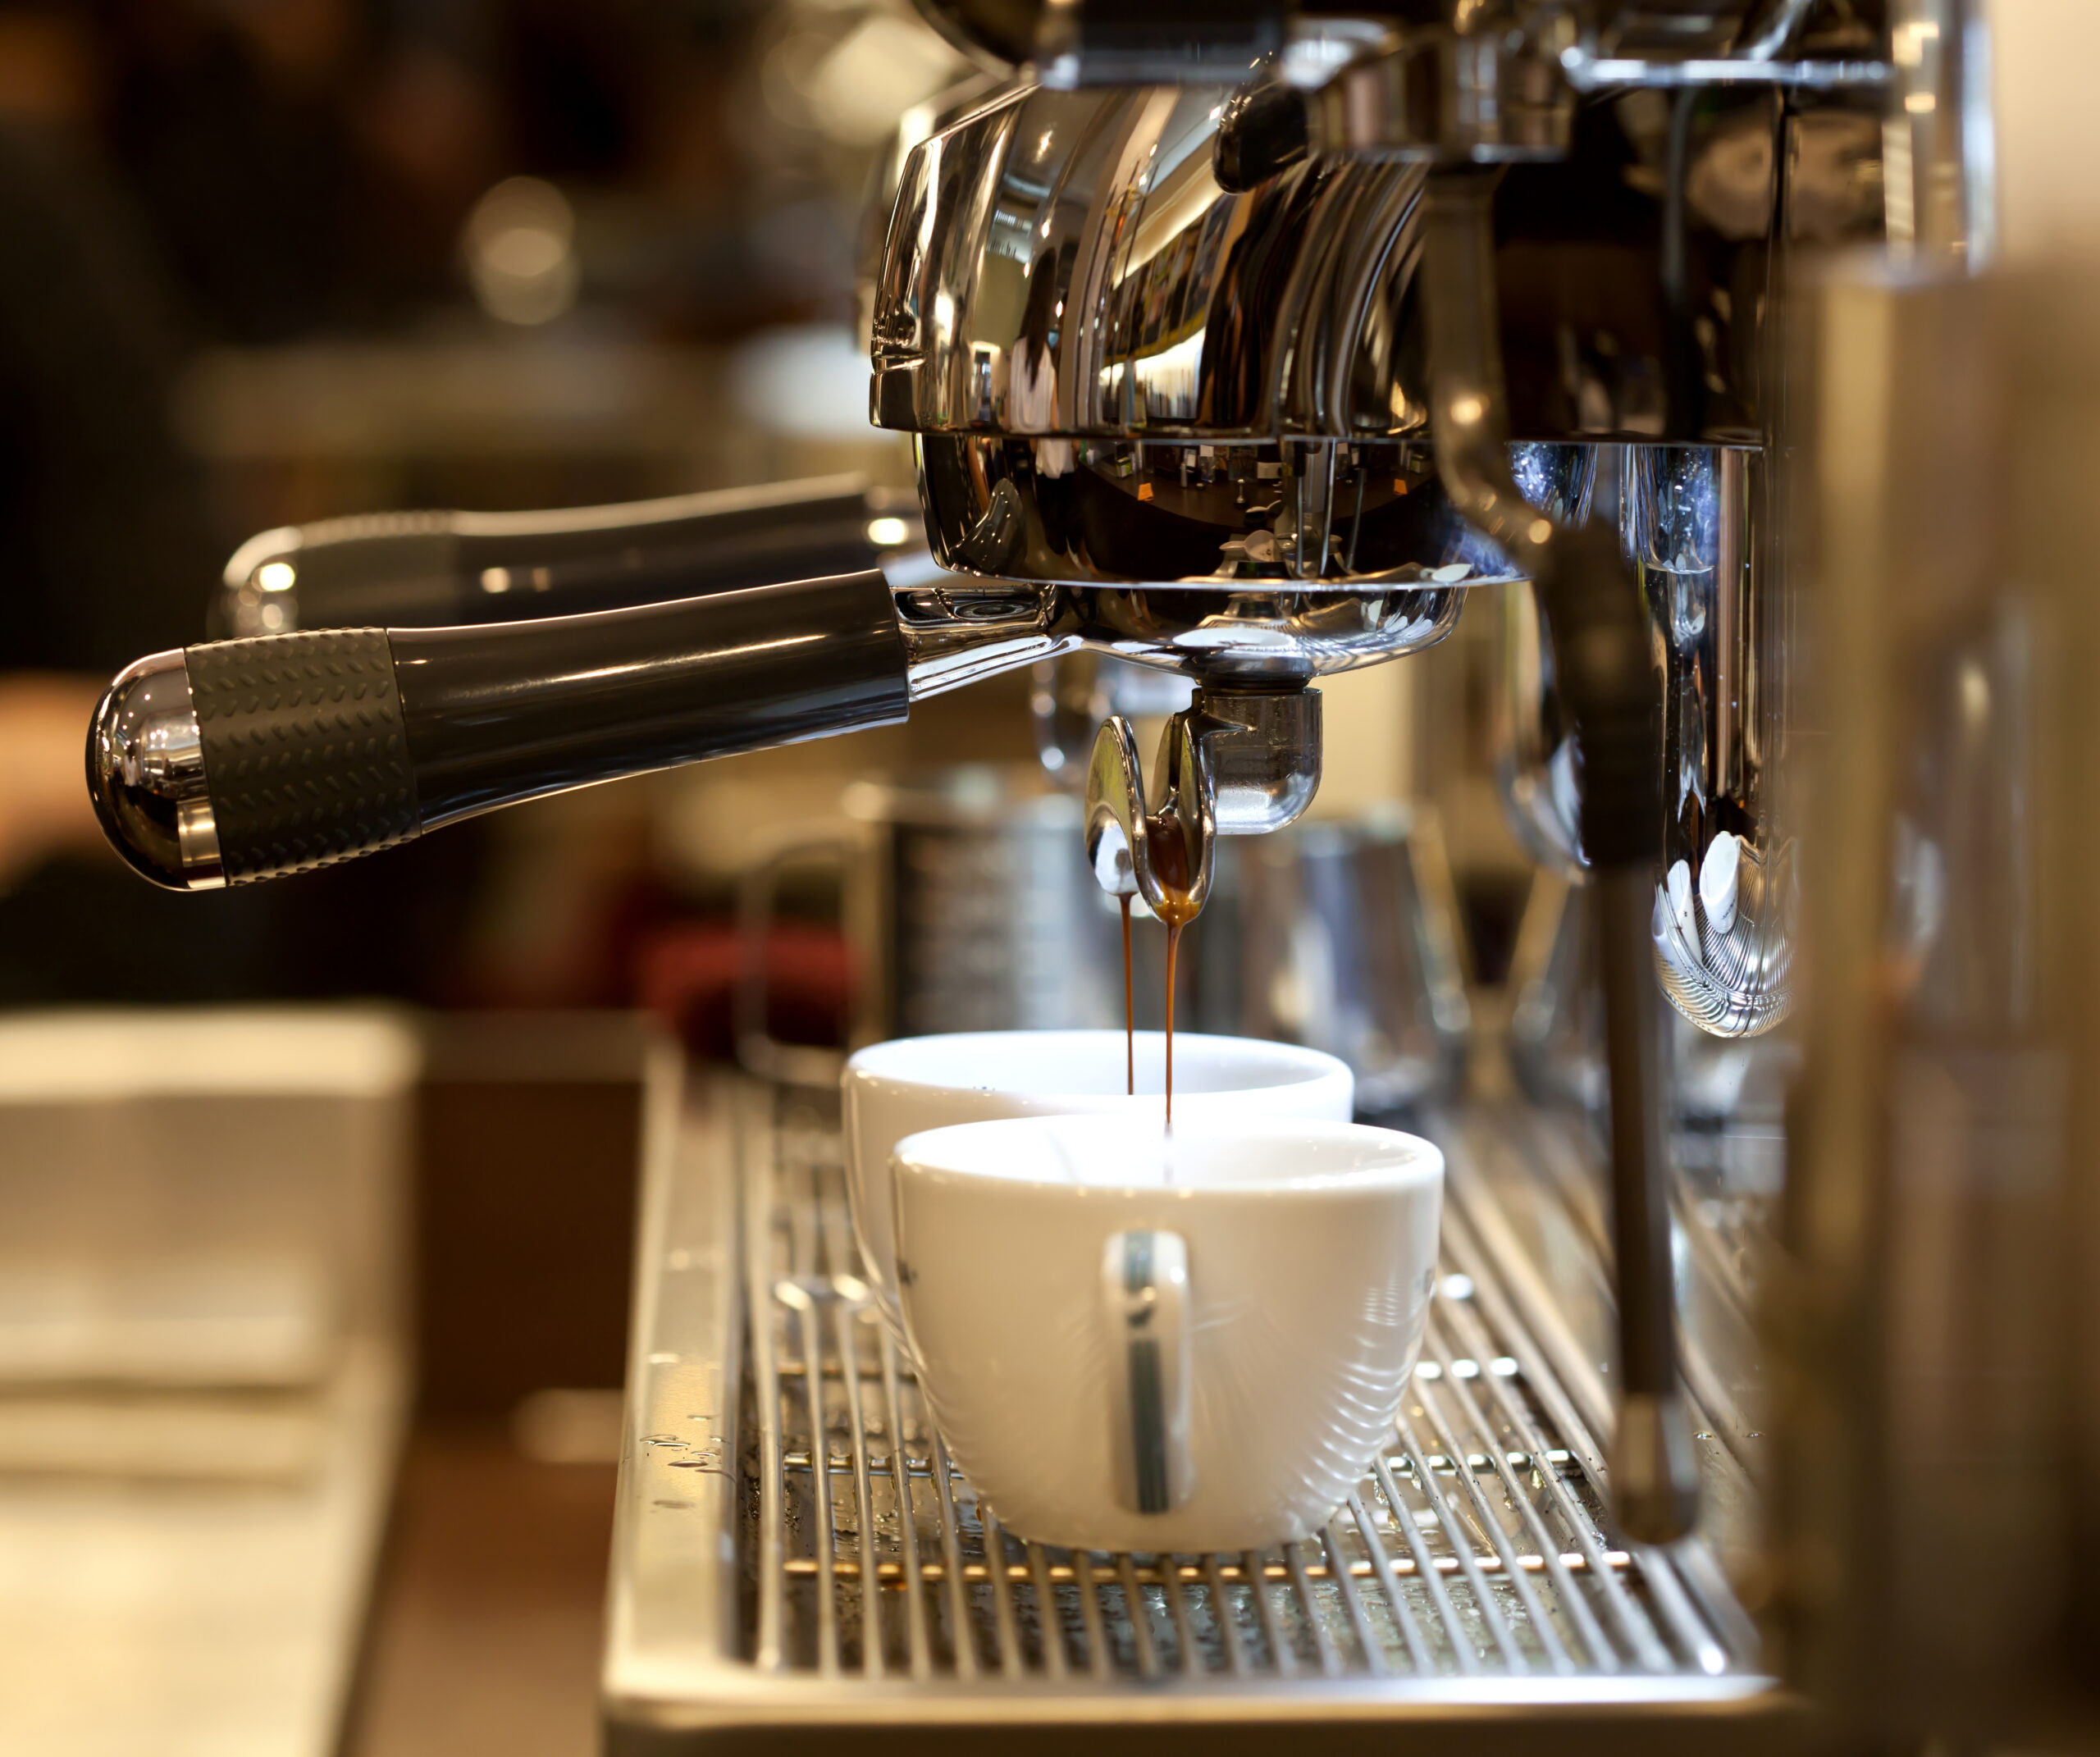 Prepares,Espresso,In,His,Coffee,Shop;,Close-up